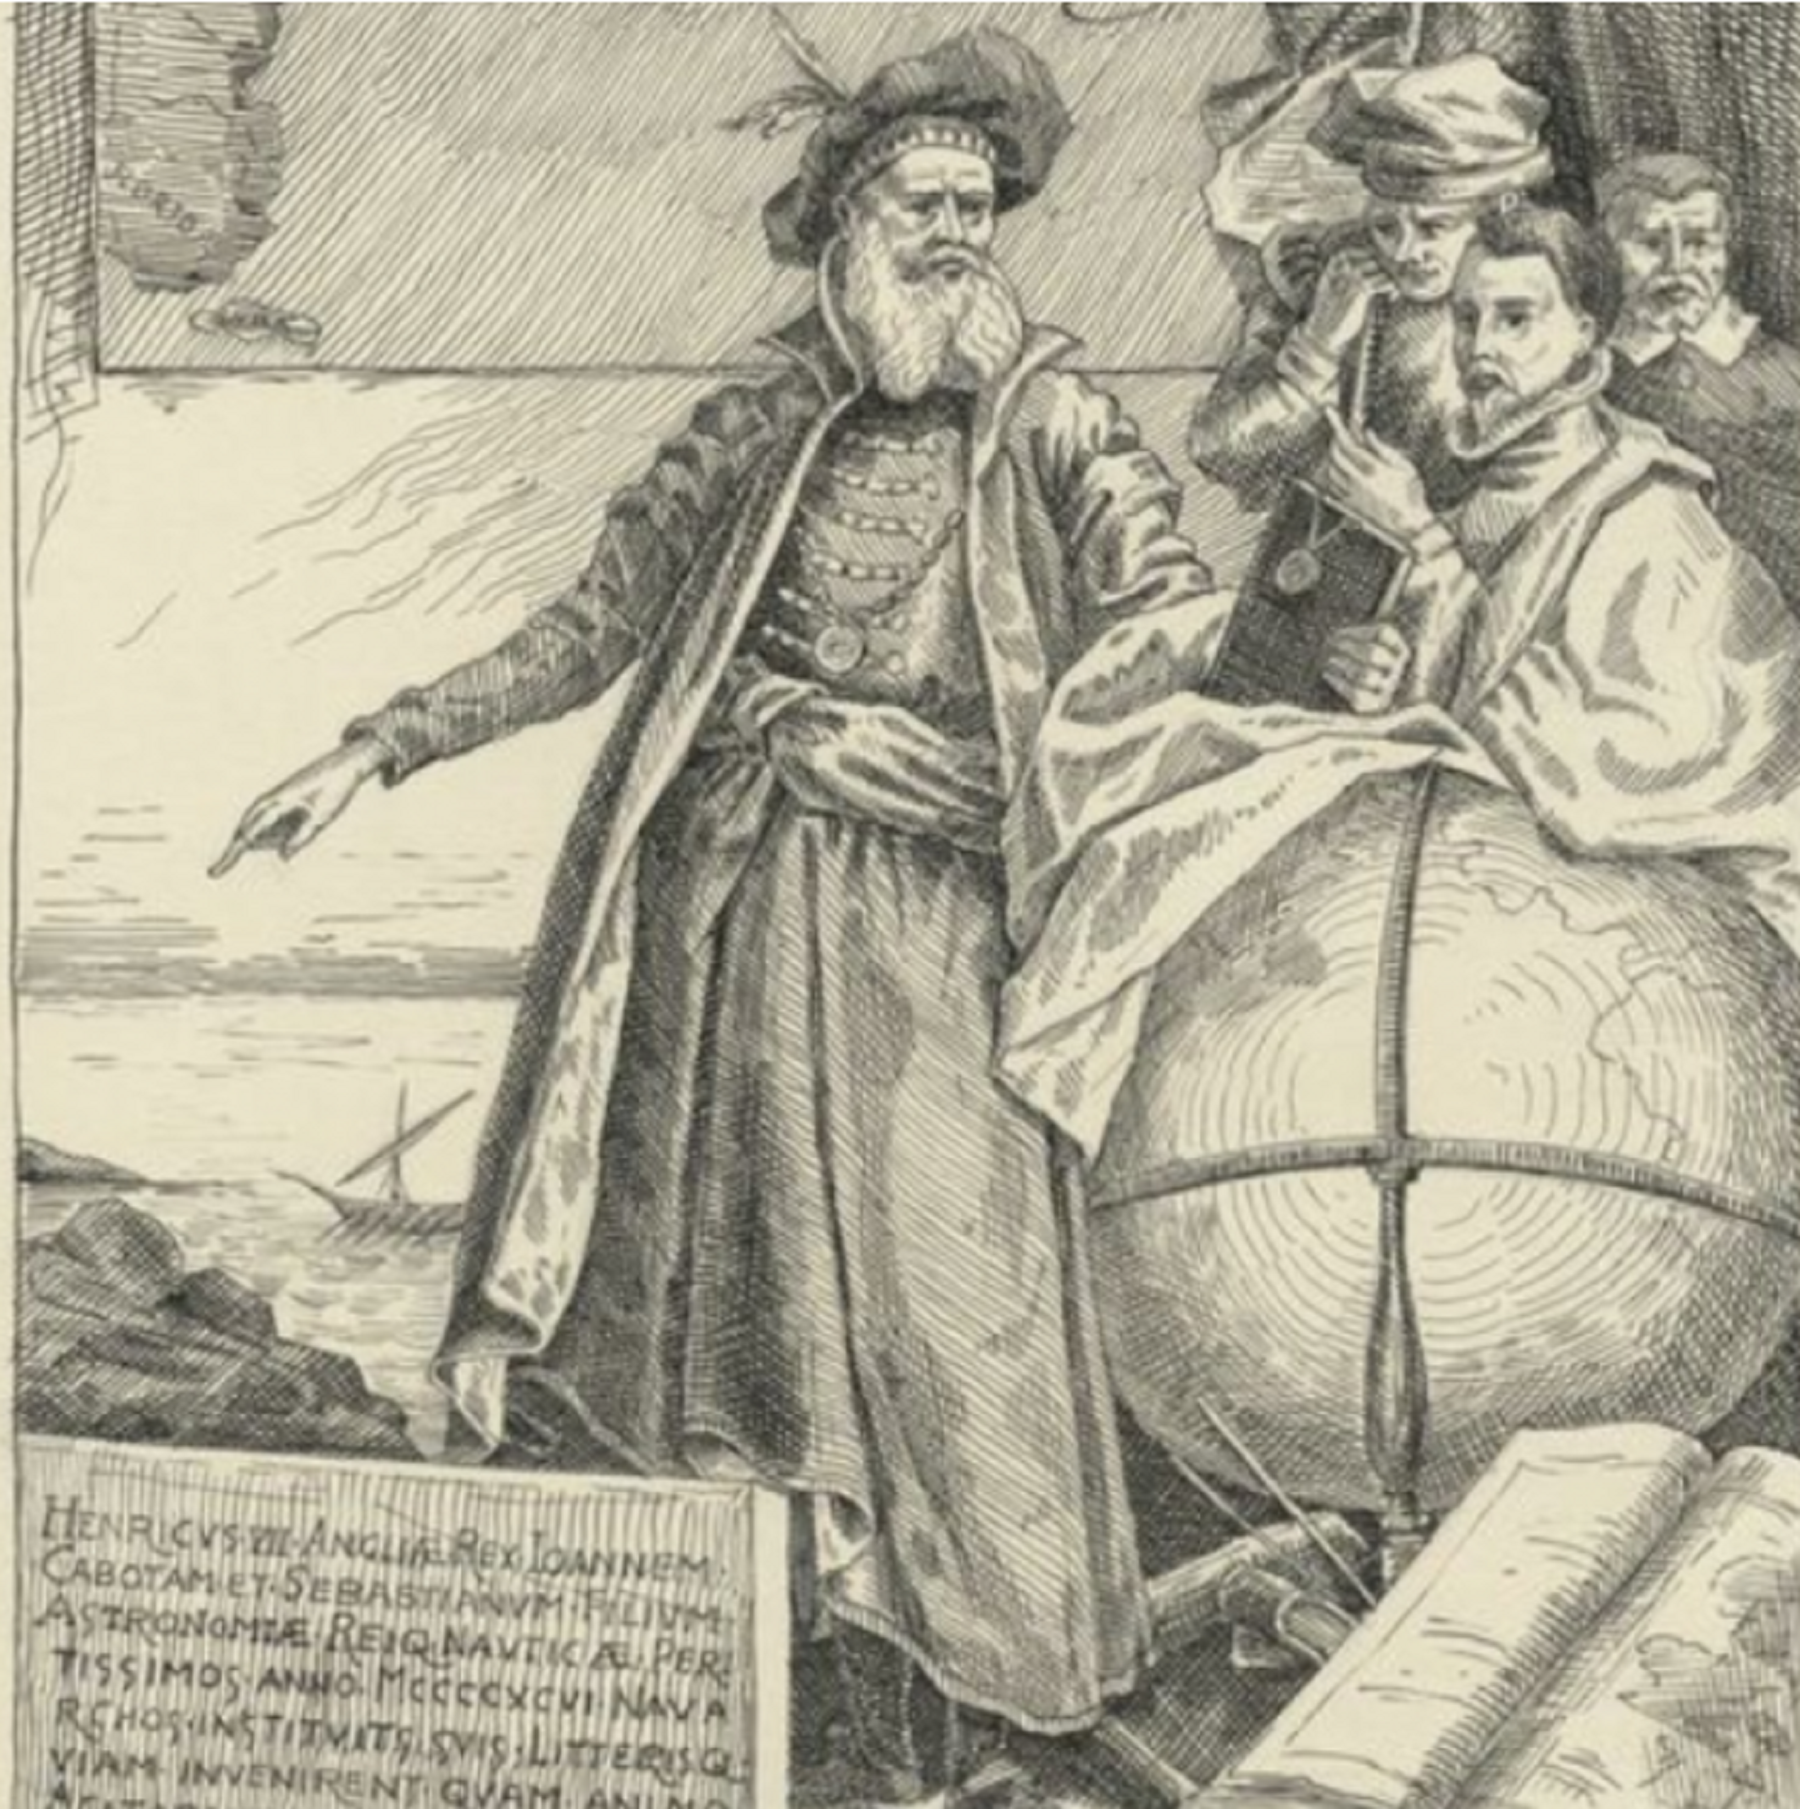 Nace Juan Caboto, compañero y rival de Colón y, también, de misterioso origen